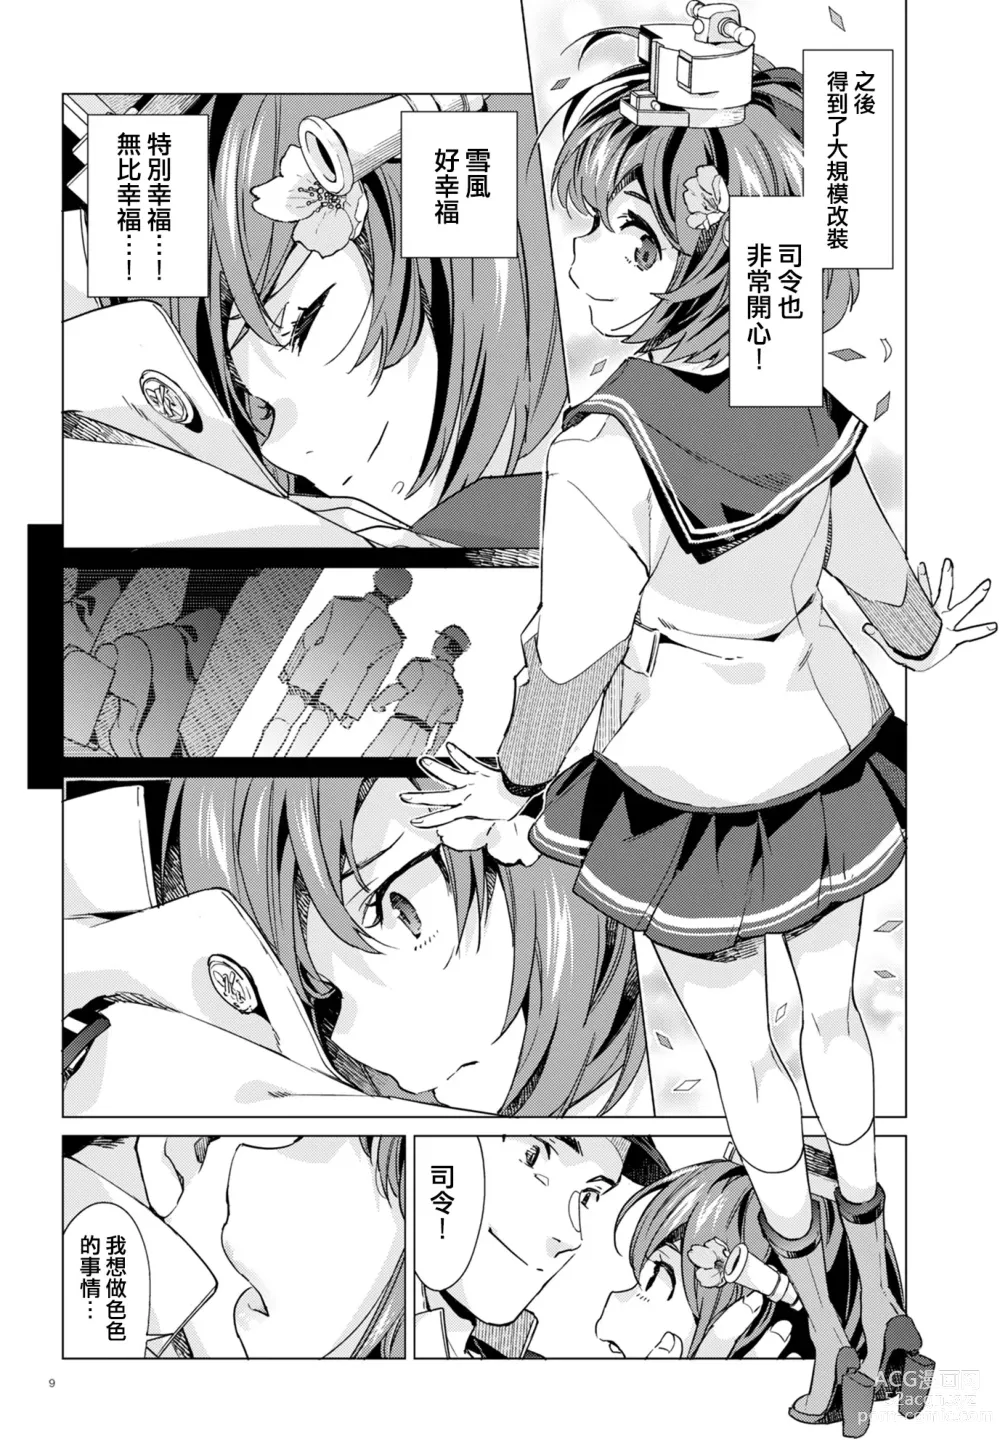 Page 9 of doujinshi Yukikaze Kai Ni wa Nashi Desuka?